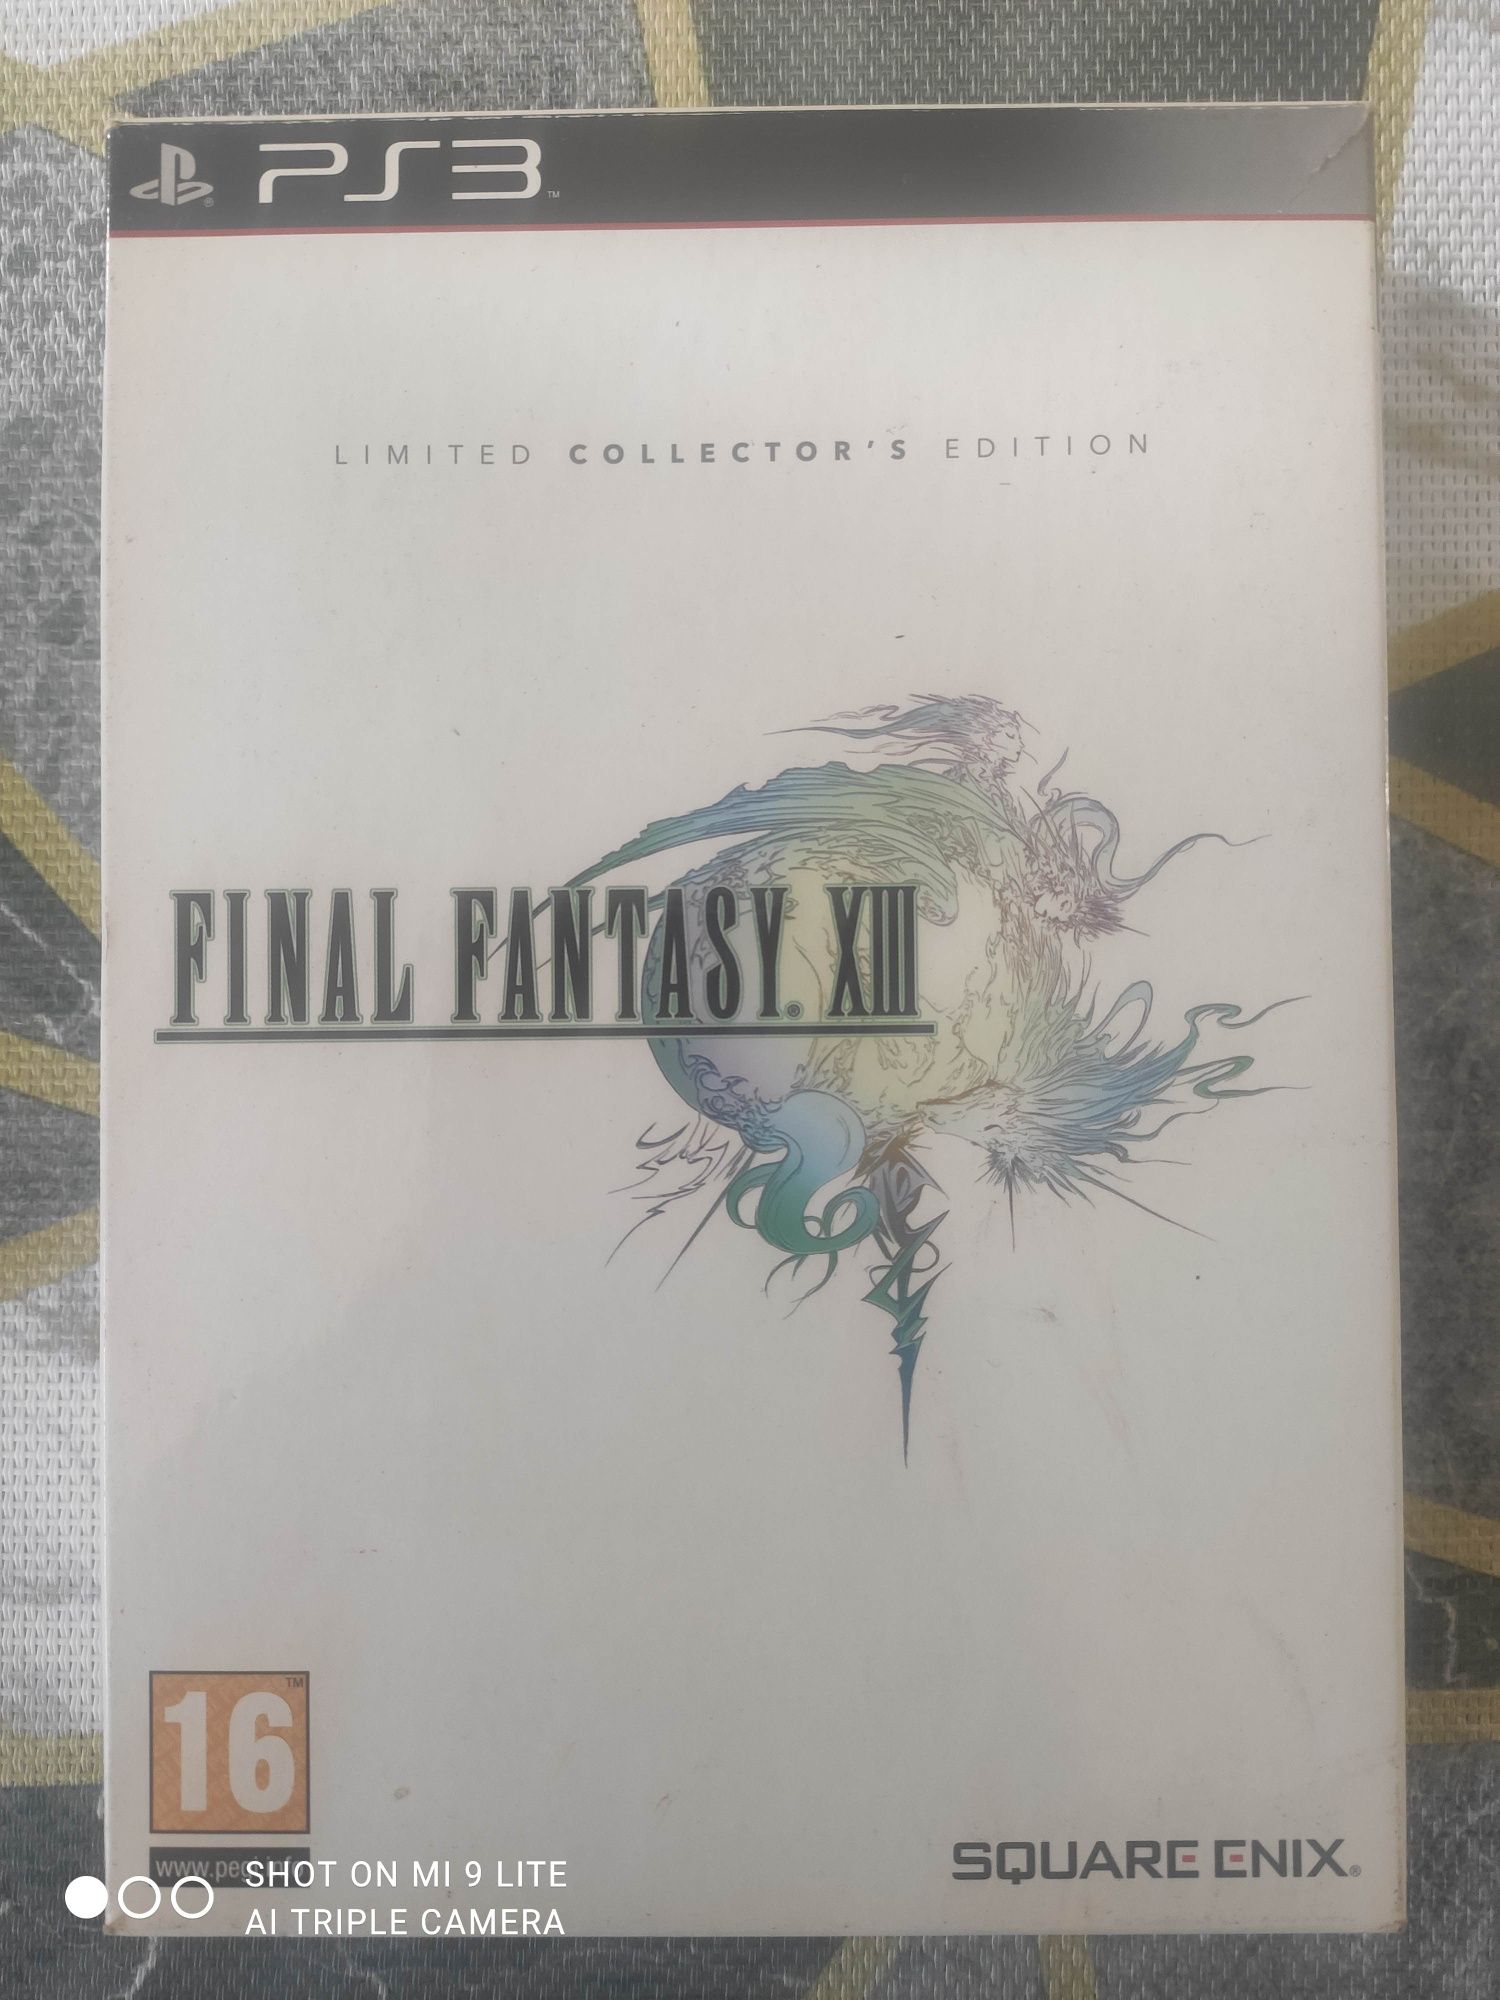 Final fantasy 13 collector edition